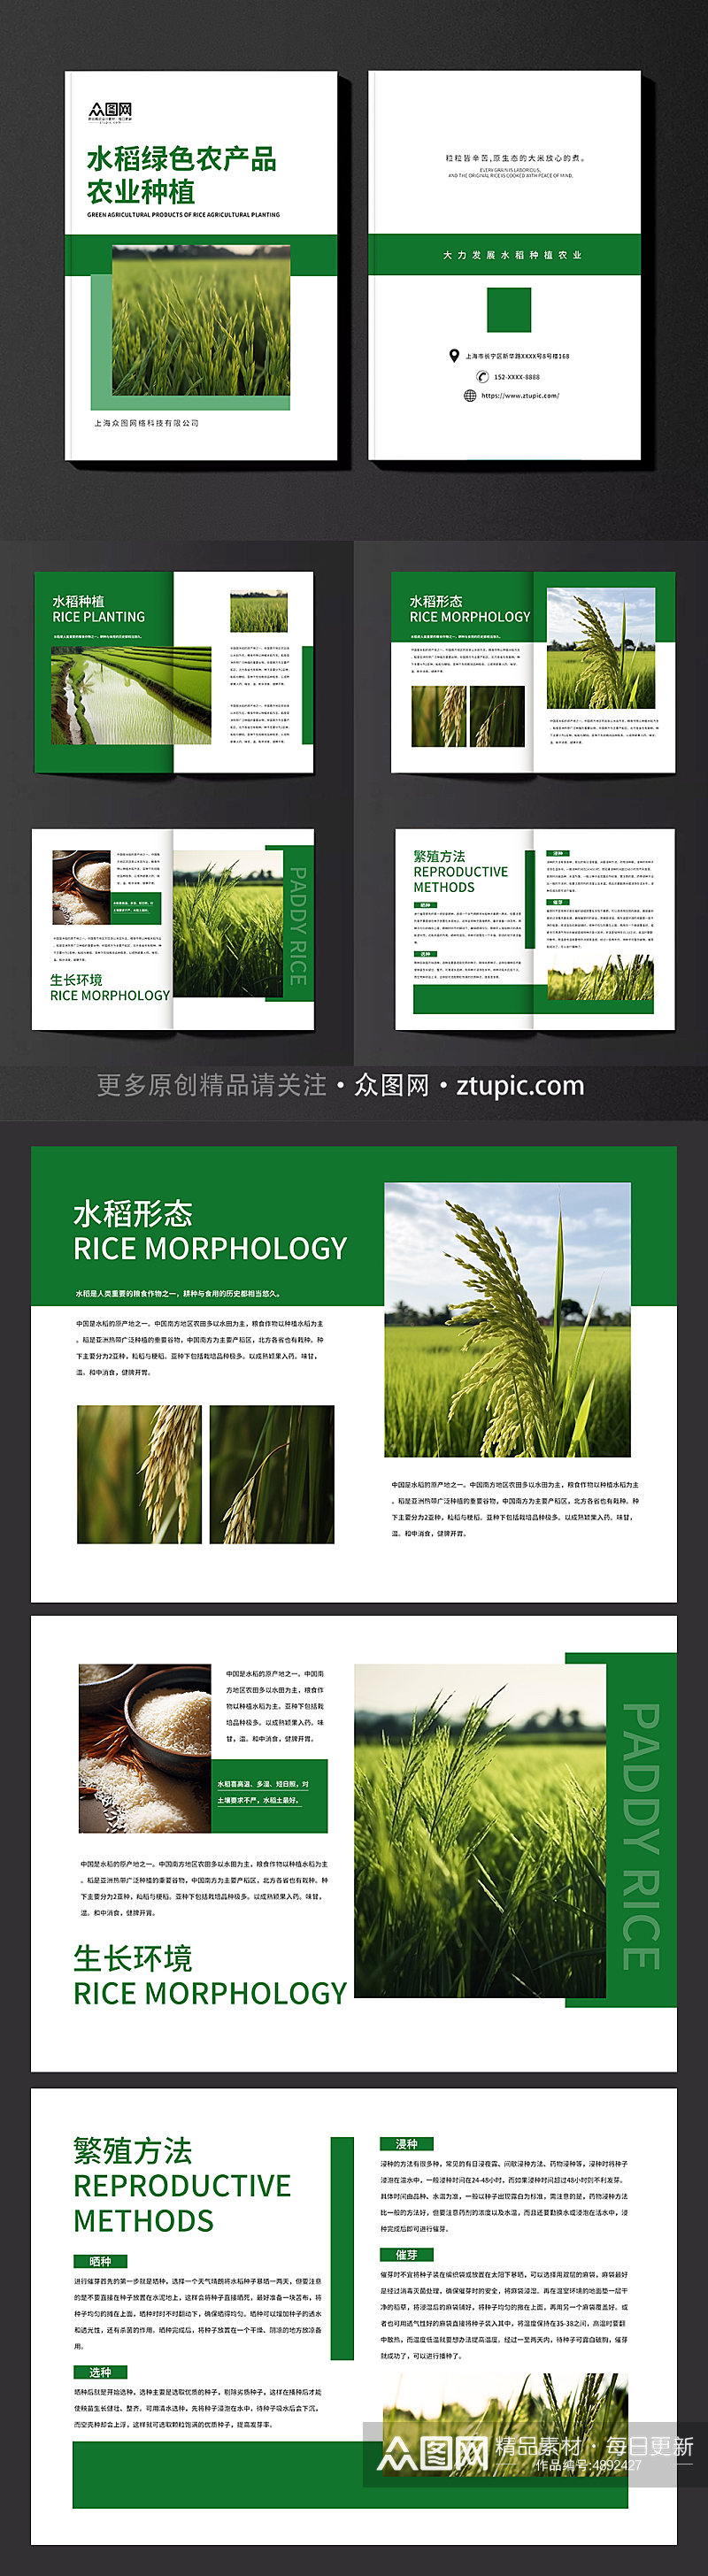 水稻绿色农产品农业种植画册素材